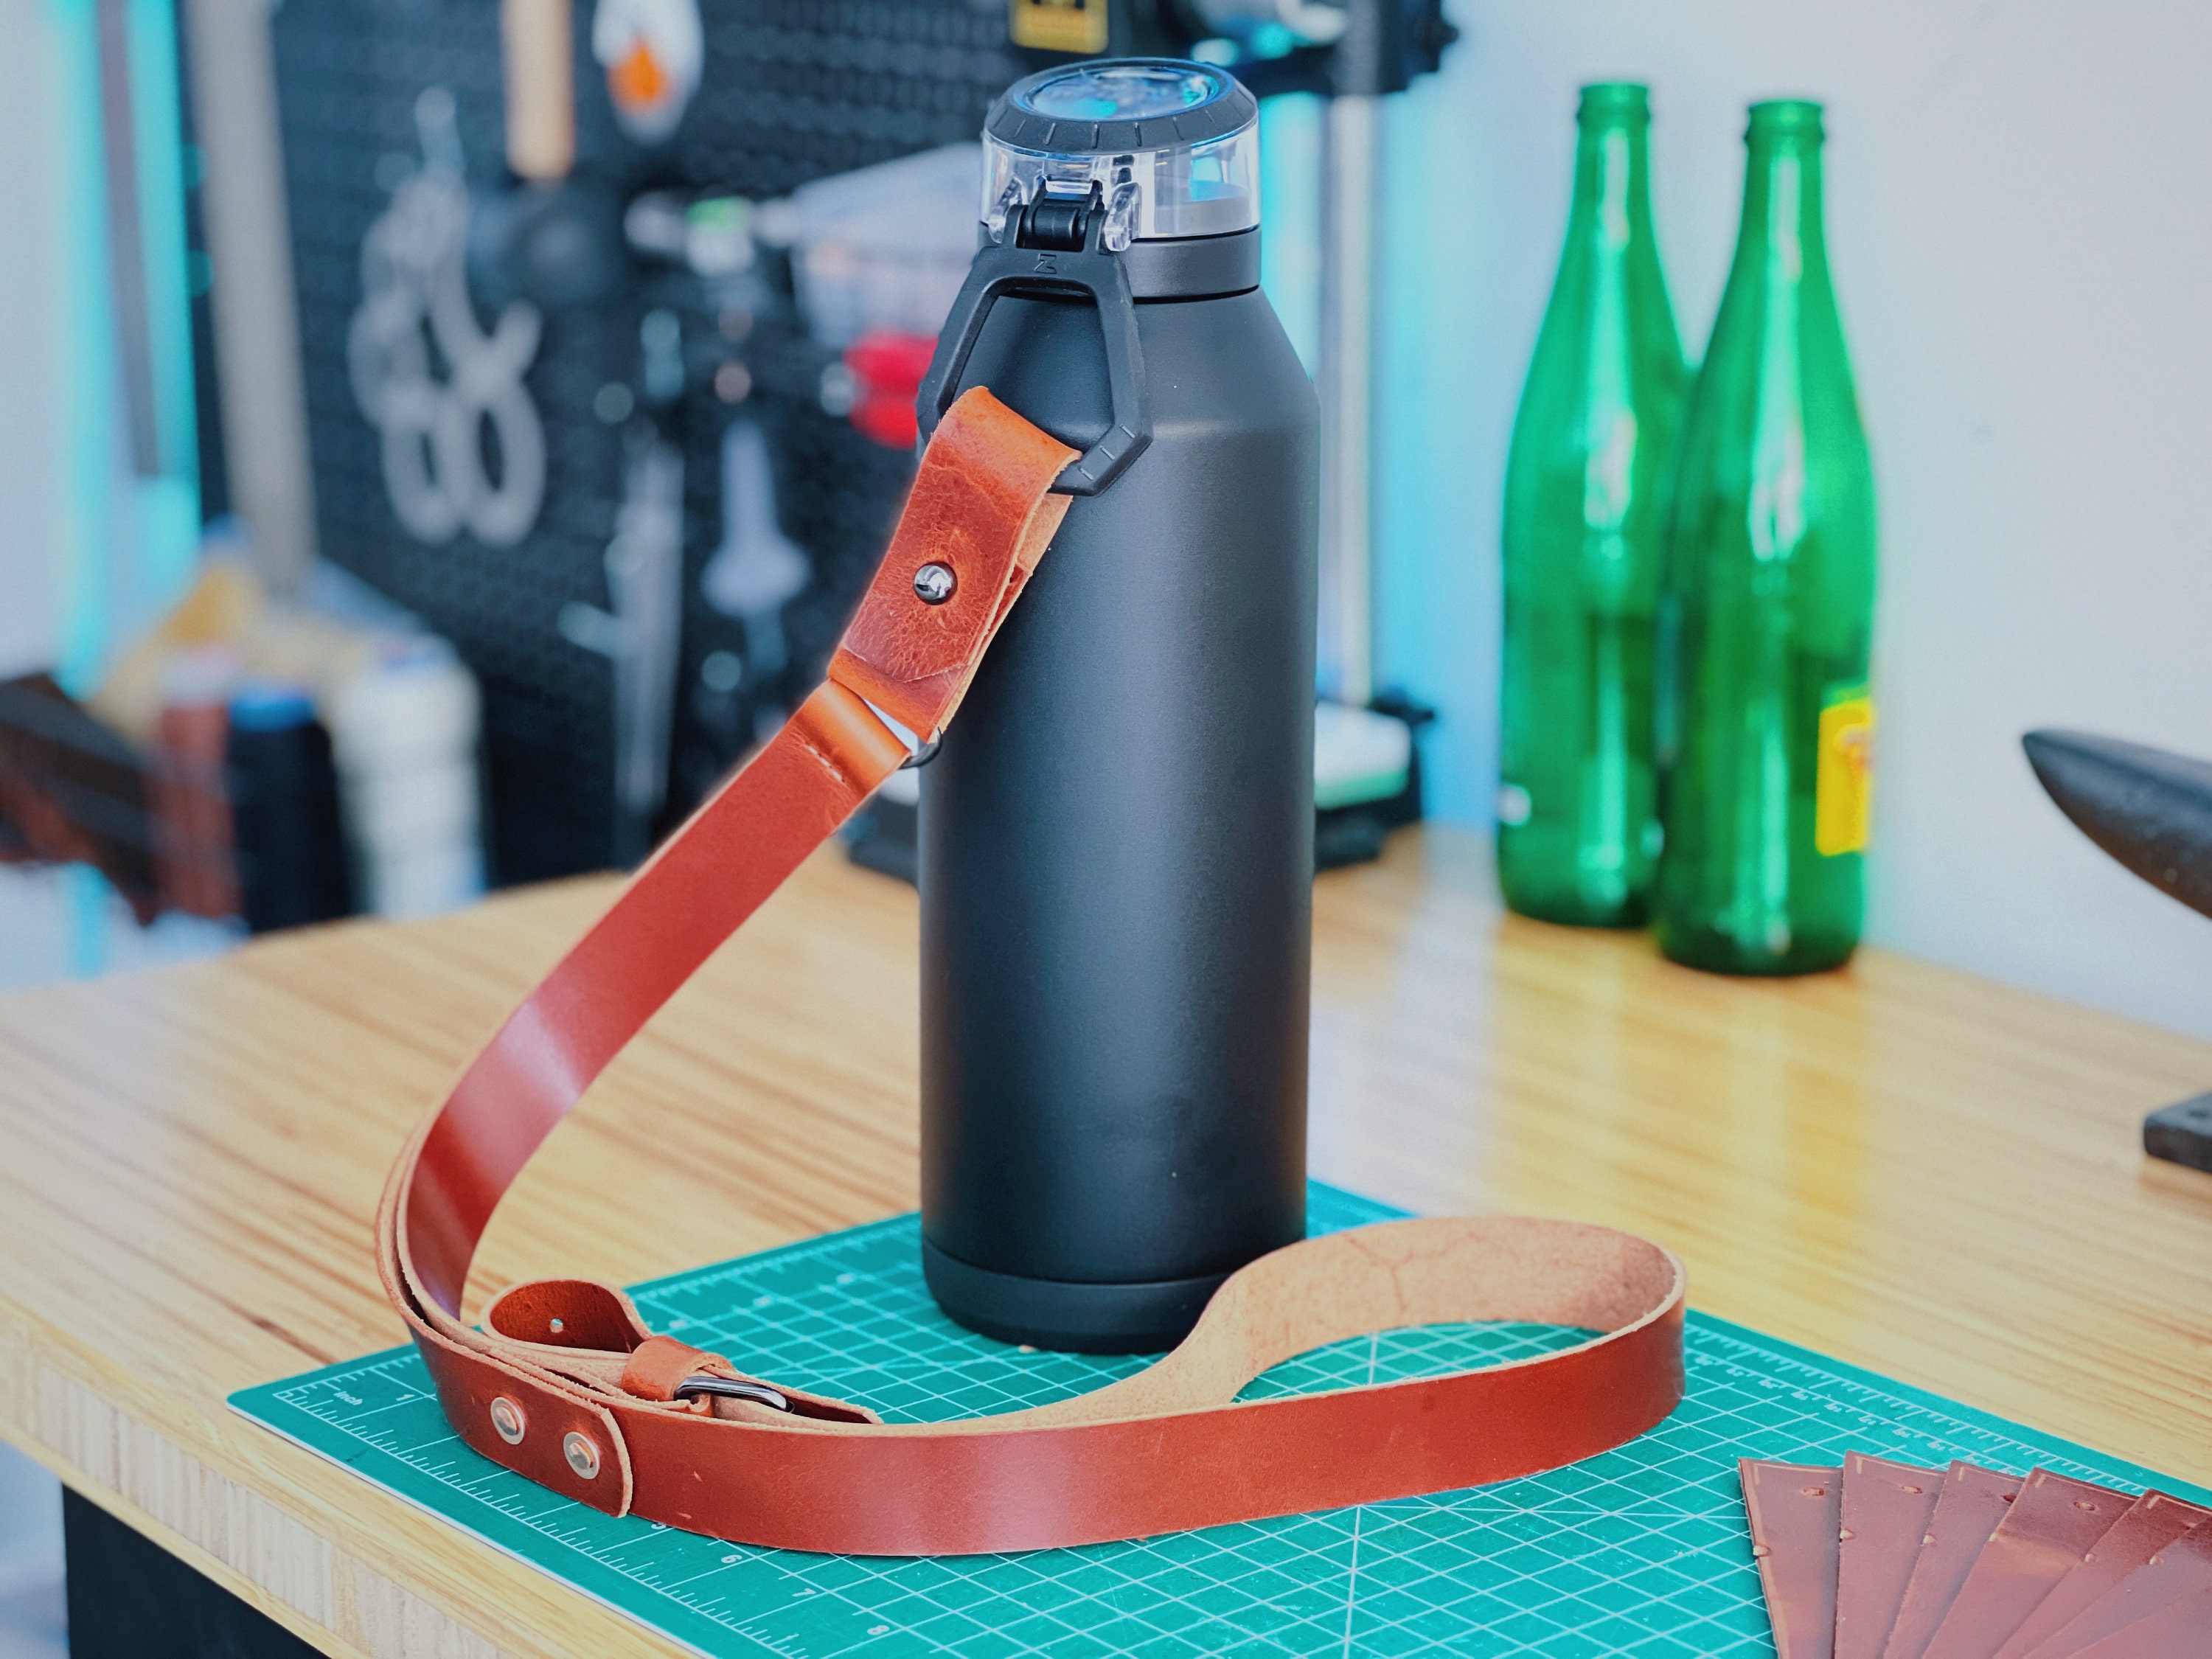 Water Bottle Handle Shoulder Strap, for 12oz - 64 oz Hydro Flask For  Walking